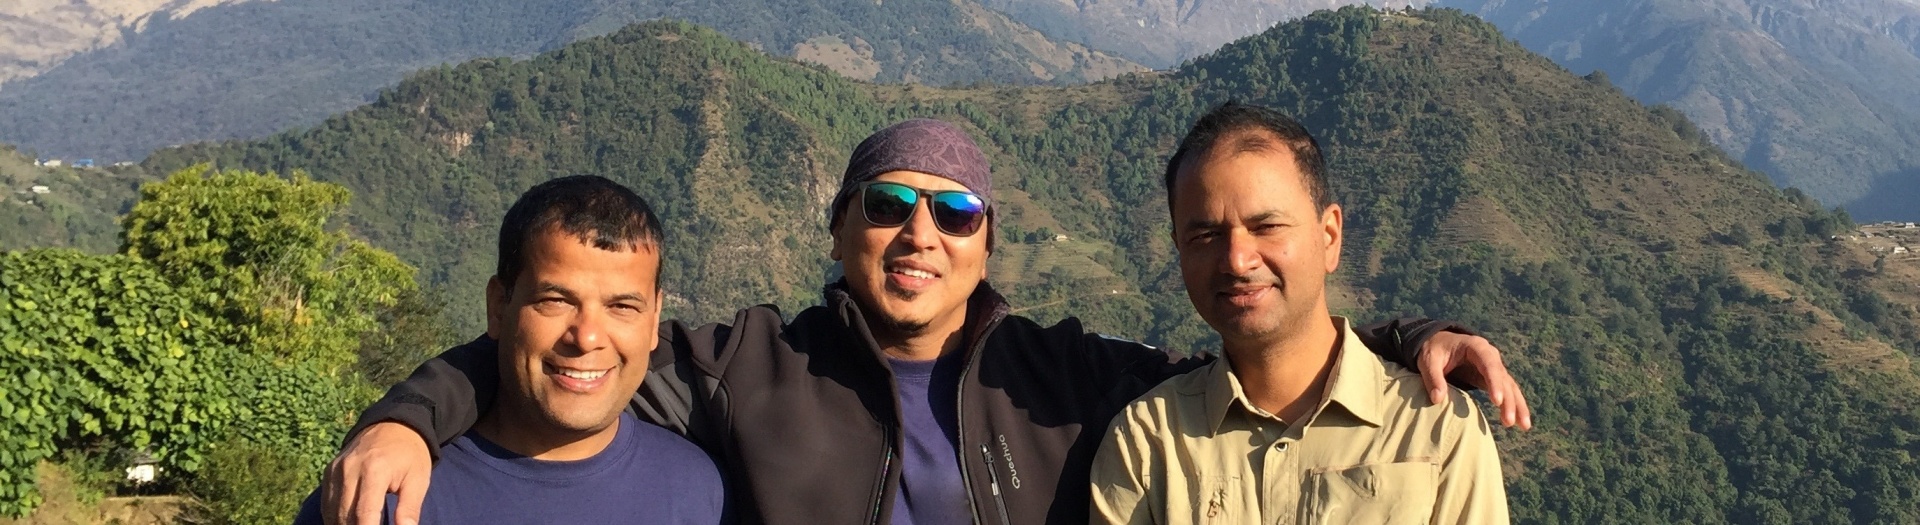 Notre équipe Altaï Népal